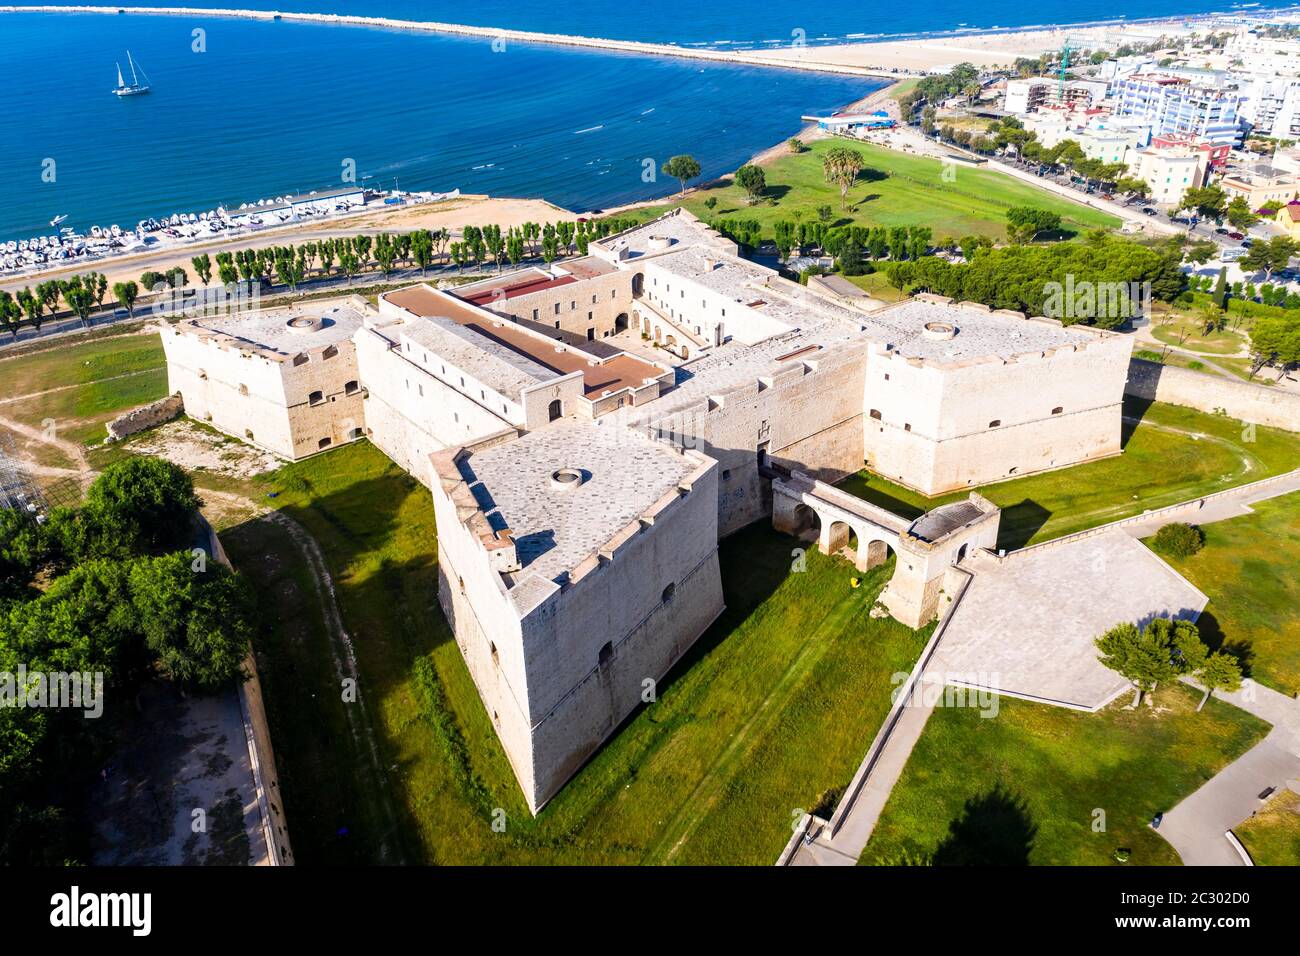 Vue aérienne de Castello Svevo, région de Trani, Barletta, Puglia, Italie Banque D'Images